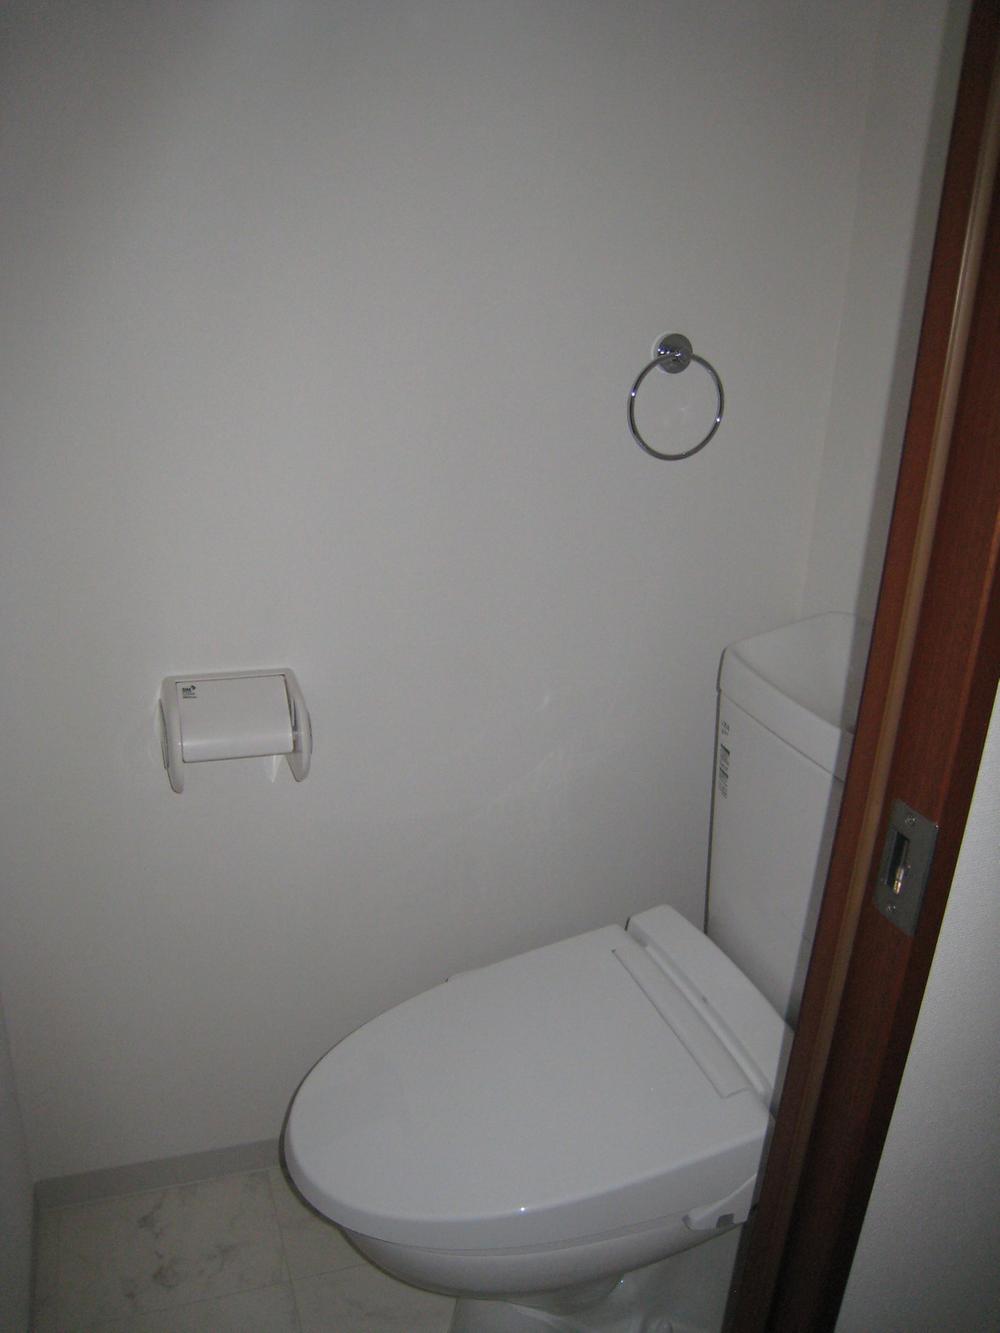 Toilet. Indoor (06 May 2013) Shooting